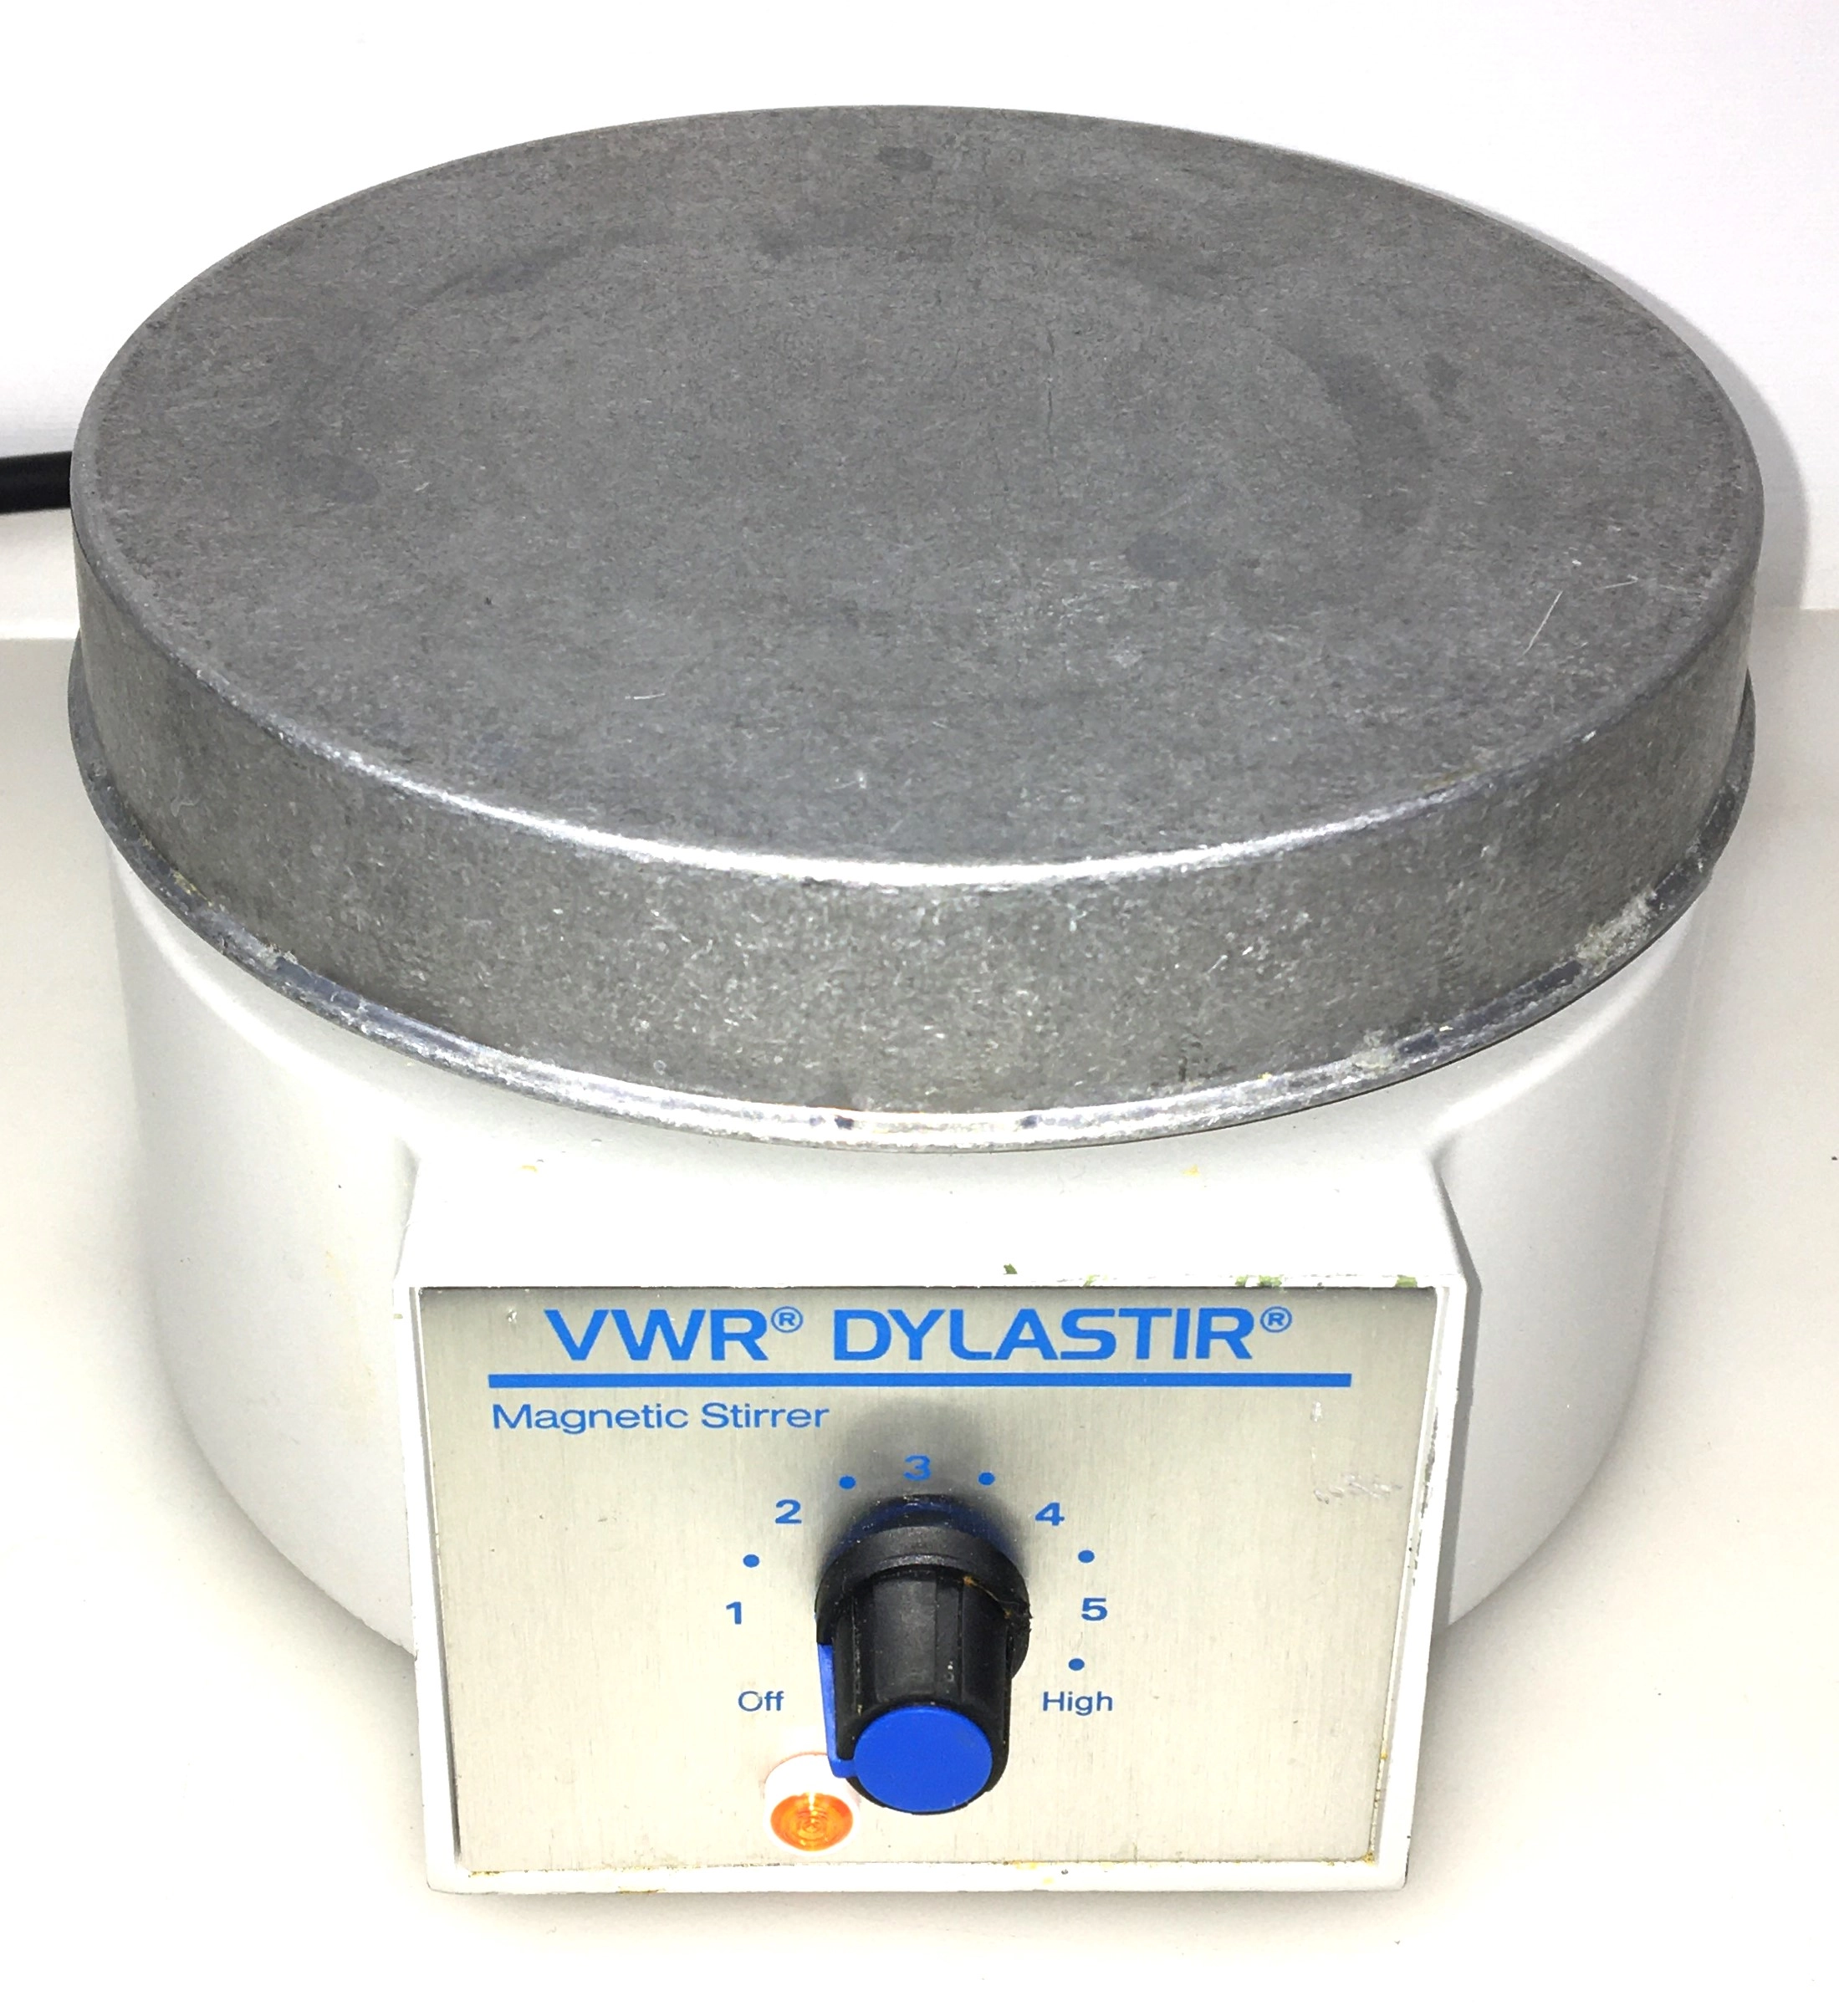 VWR (Troemner) DylaStir Magnetic Stirrer